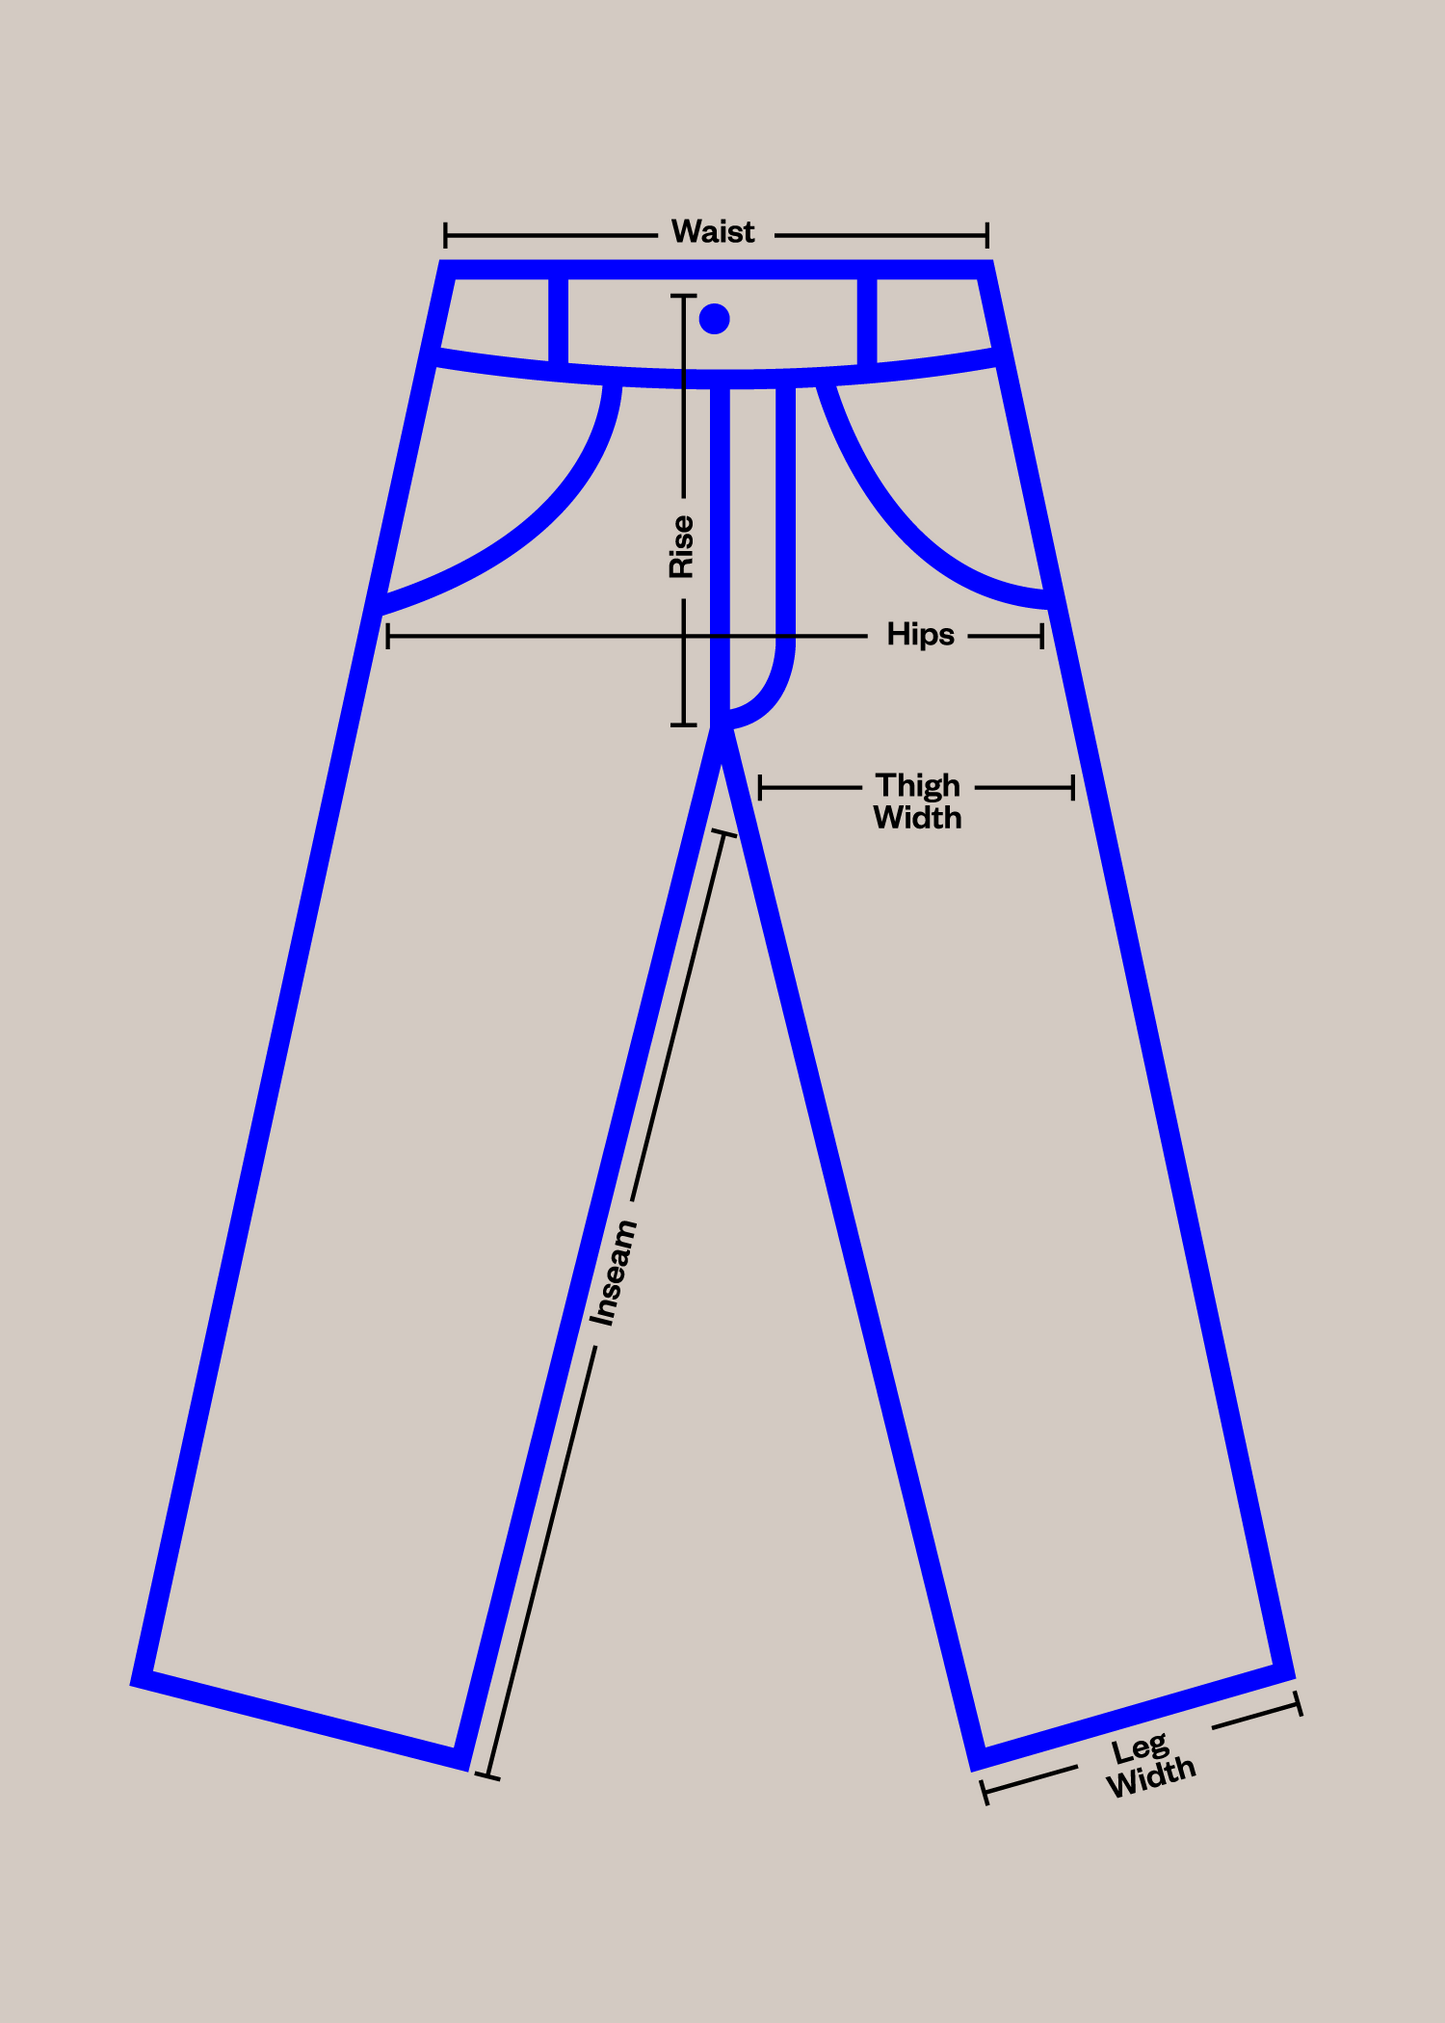 1982 Paul Royé HBT French Military Cargo Pants Size Women's 27 Men's 30